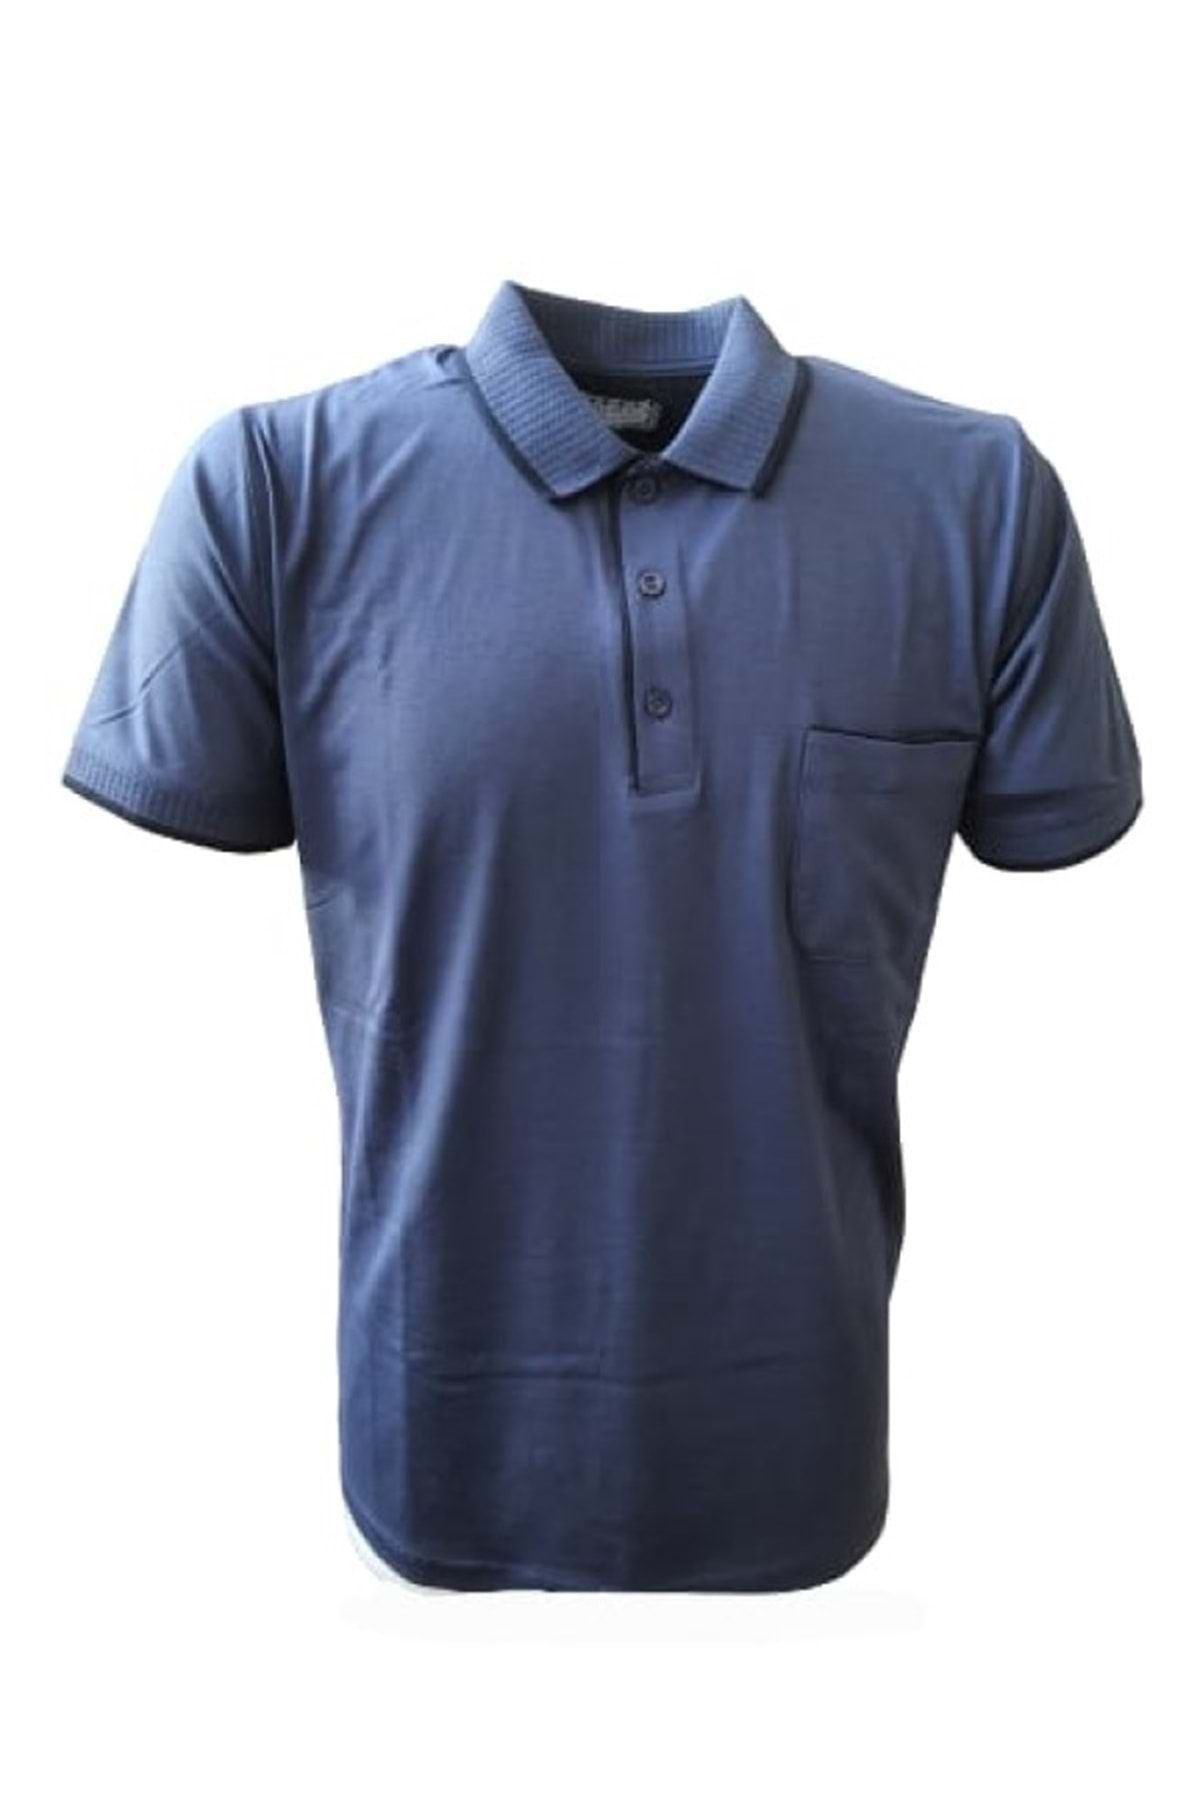 Rey Polo Erkek Basic Polo Yaka Kısa Kol T-shirt 430 - Mavi - M